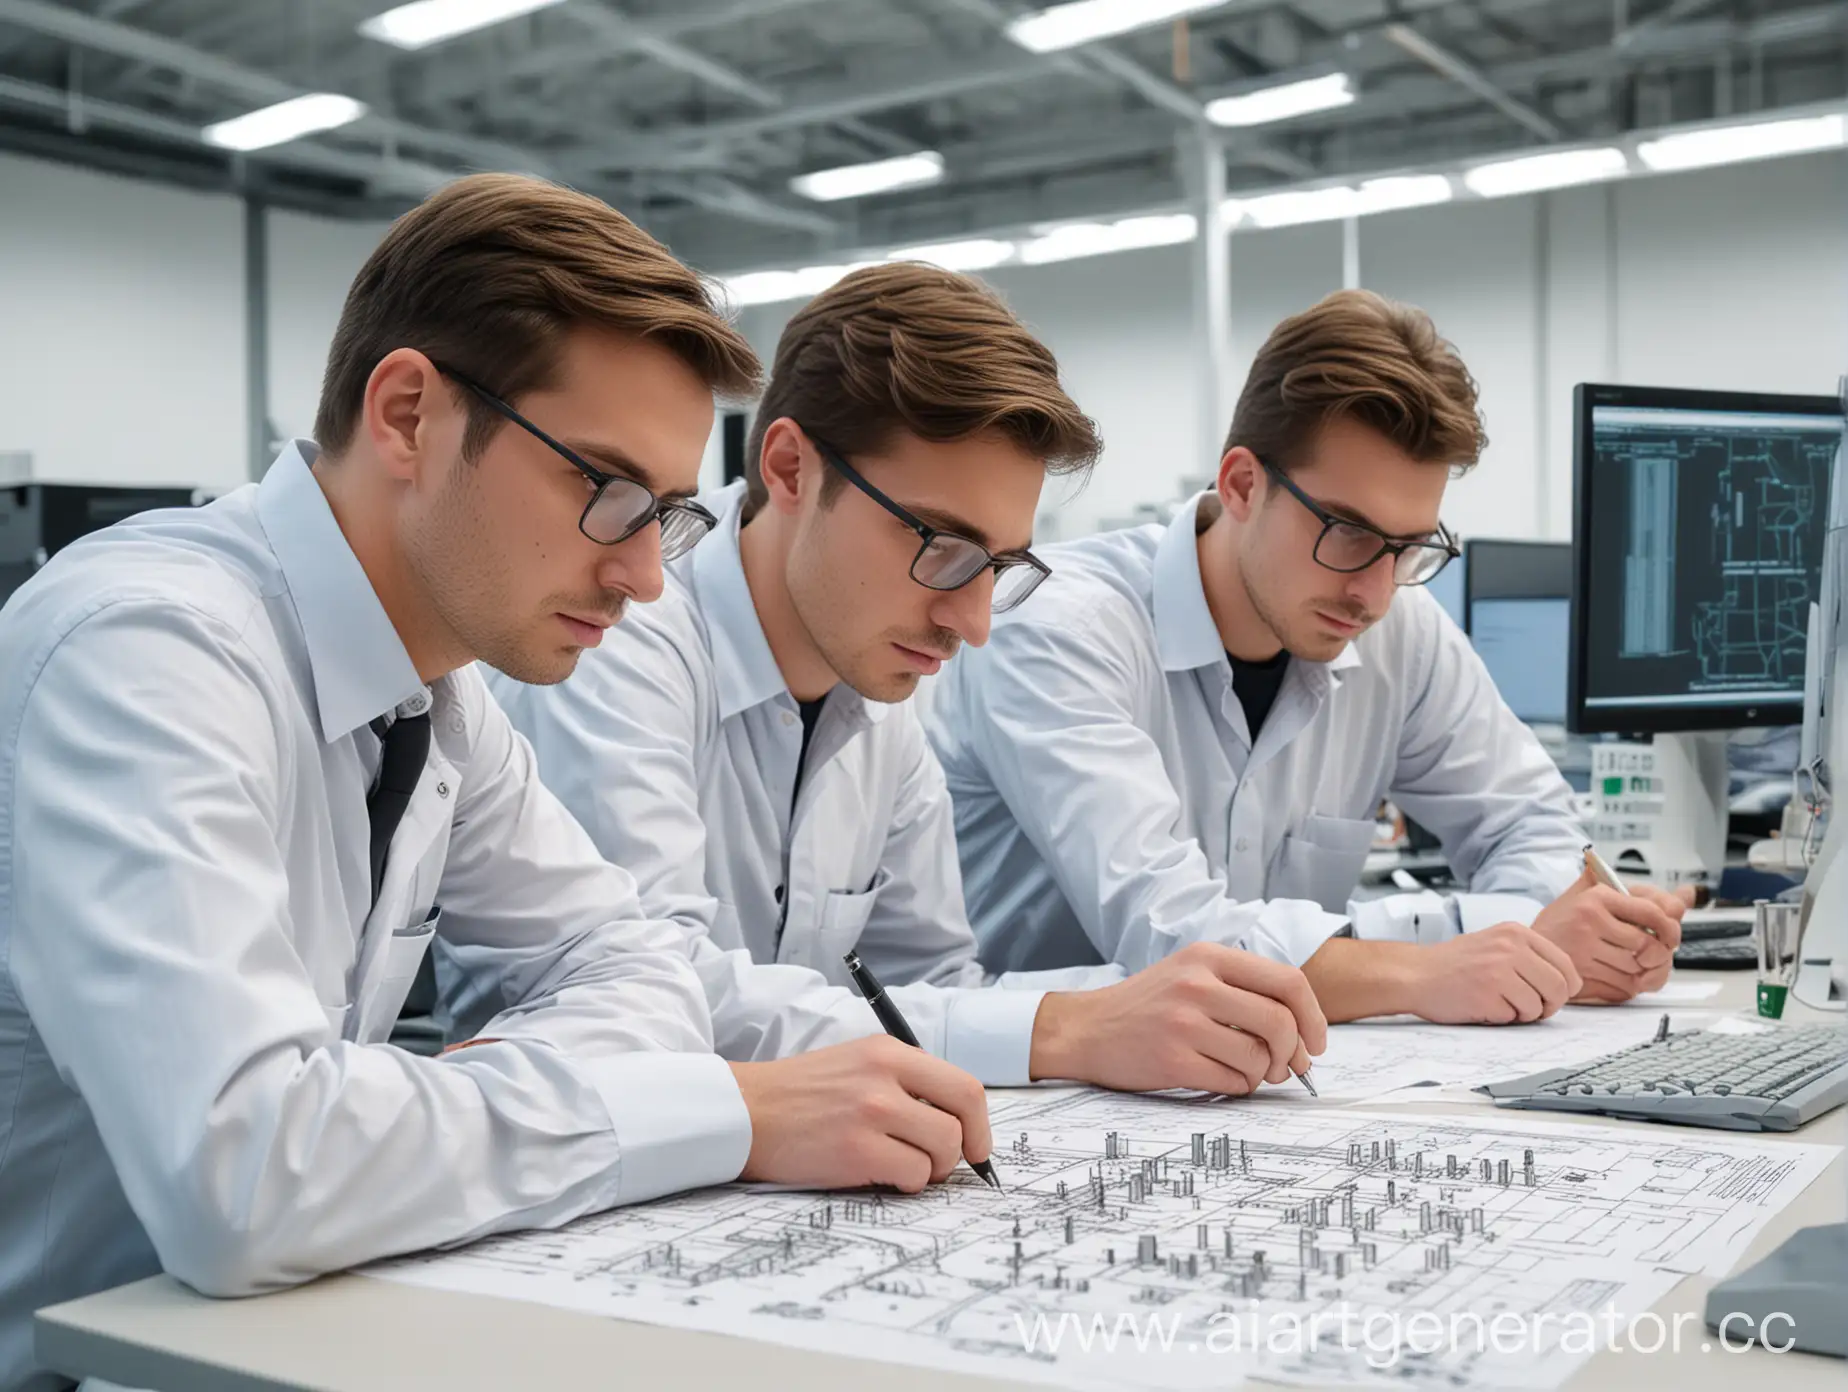 Три инженера сидят за столом, изучают сложную деталь, стол с деталью крупным планом, на заднем плане компьютеры